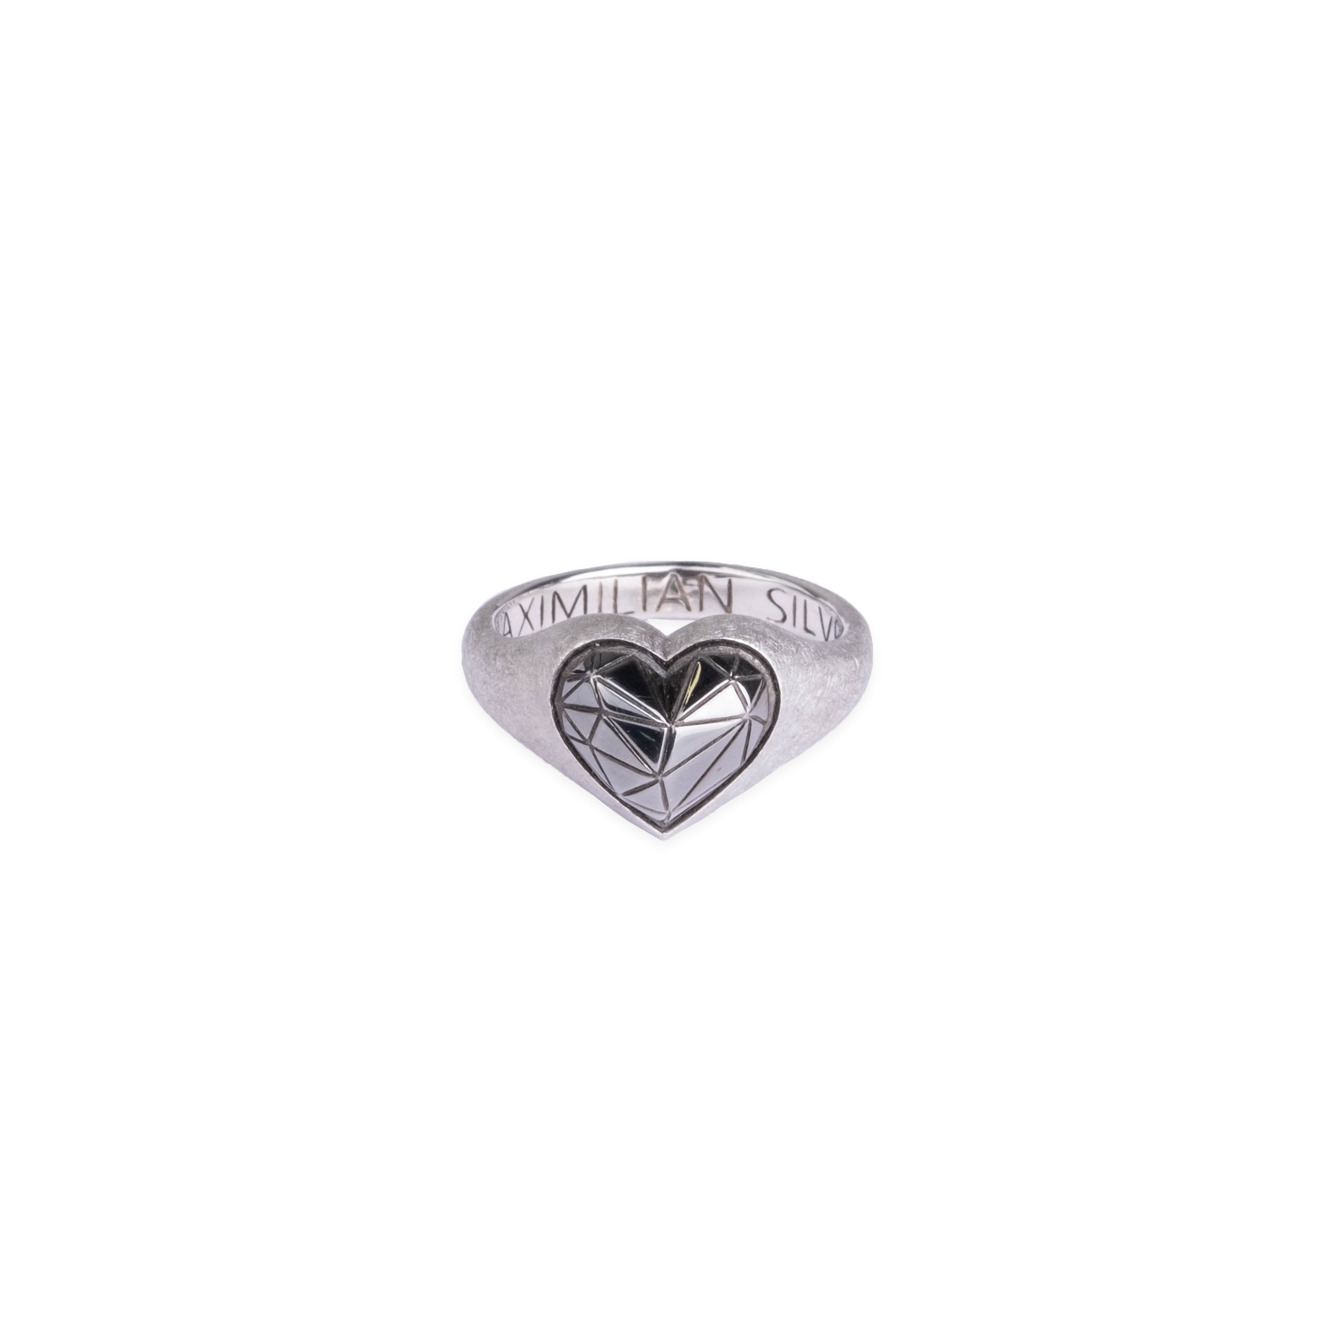 Maximilian Silver Label Матовое кольцо из серебра maximilian silver label кольцо червовый валет из серебра с белым родием